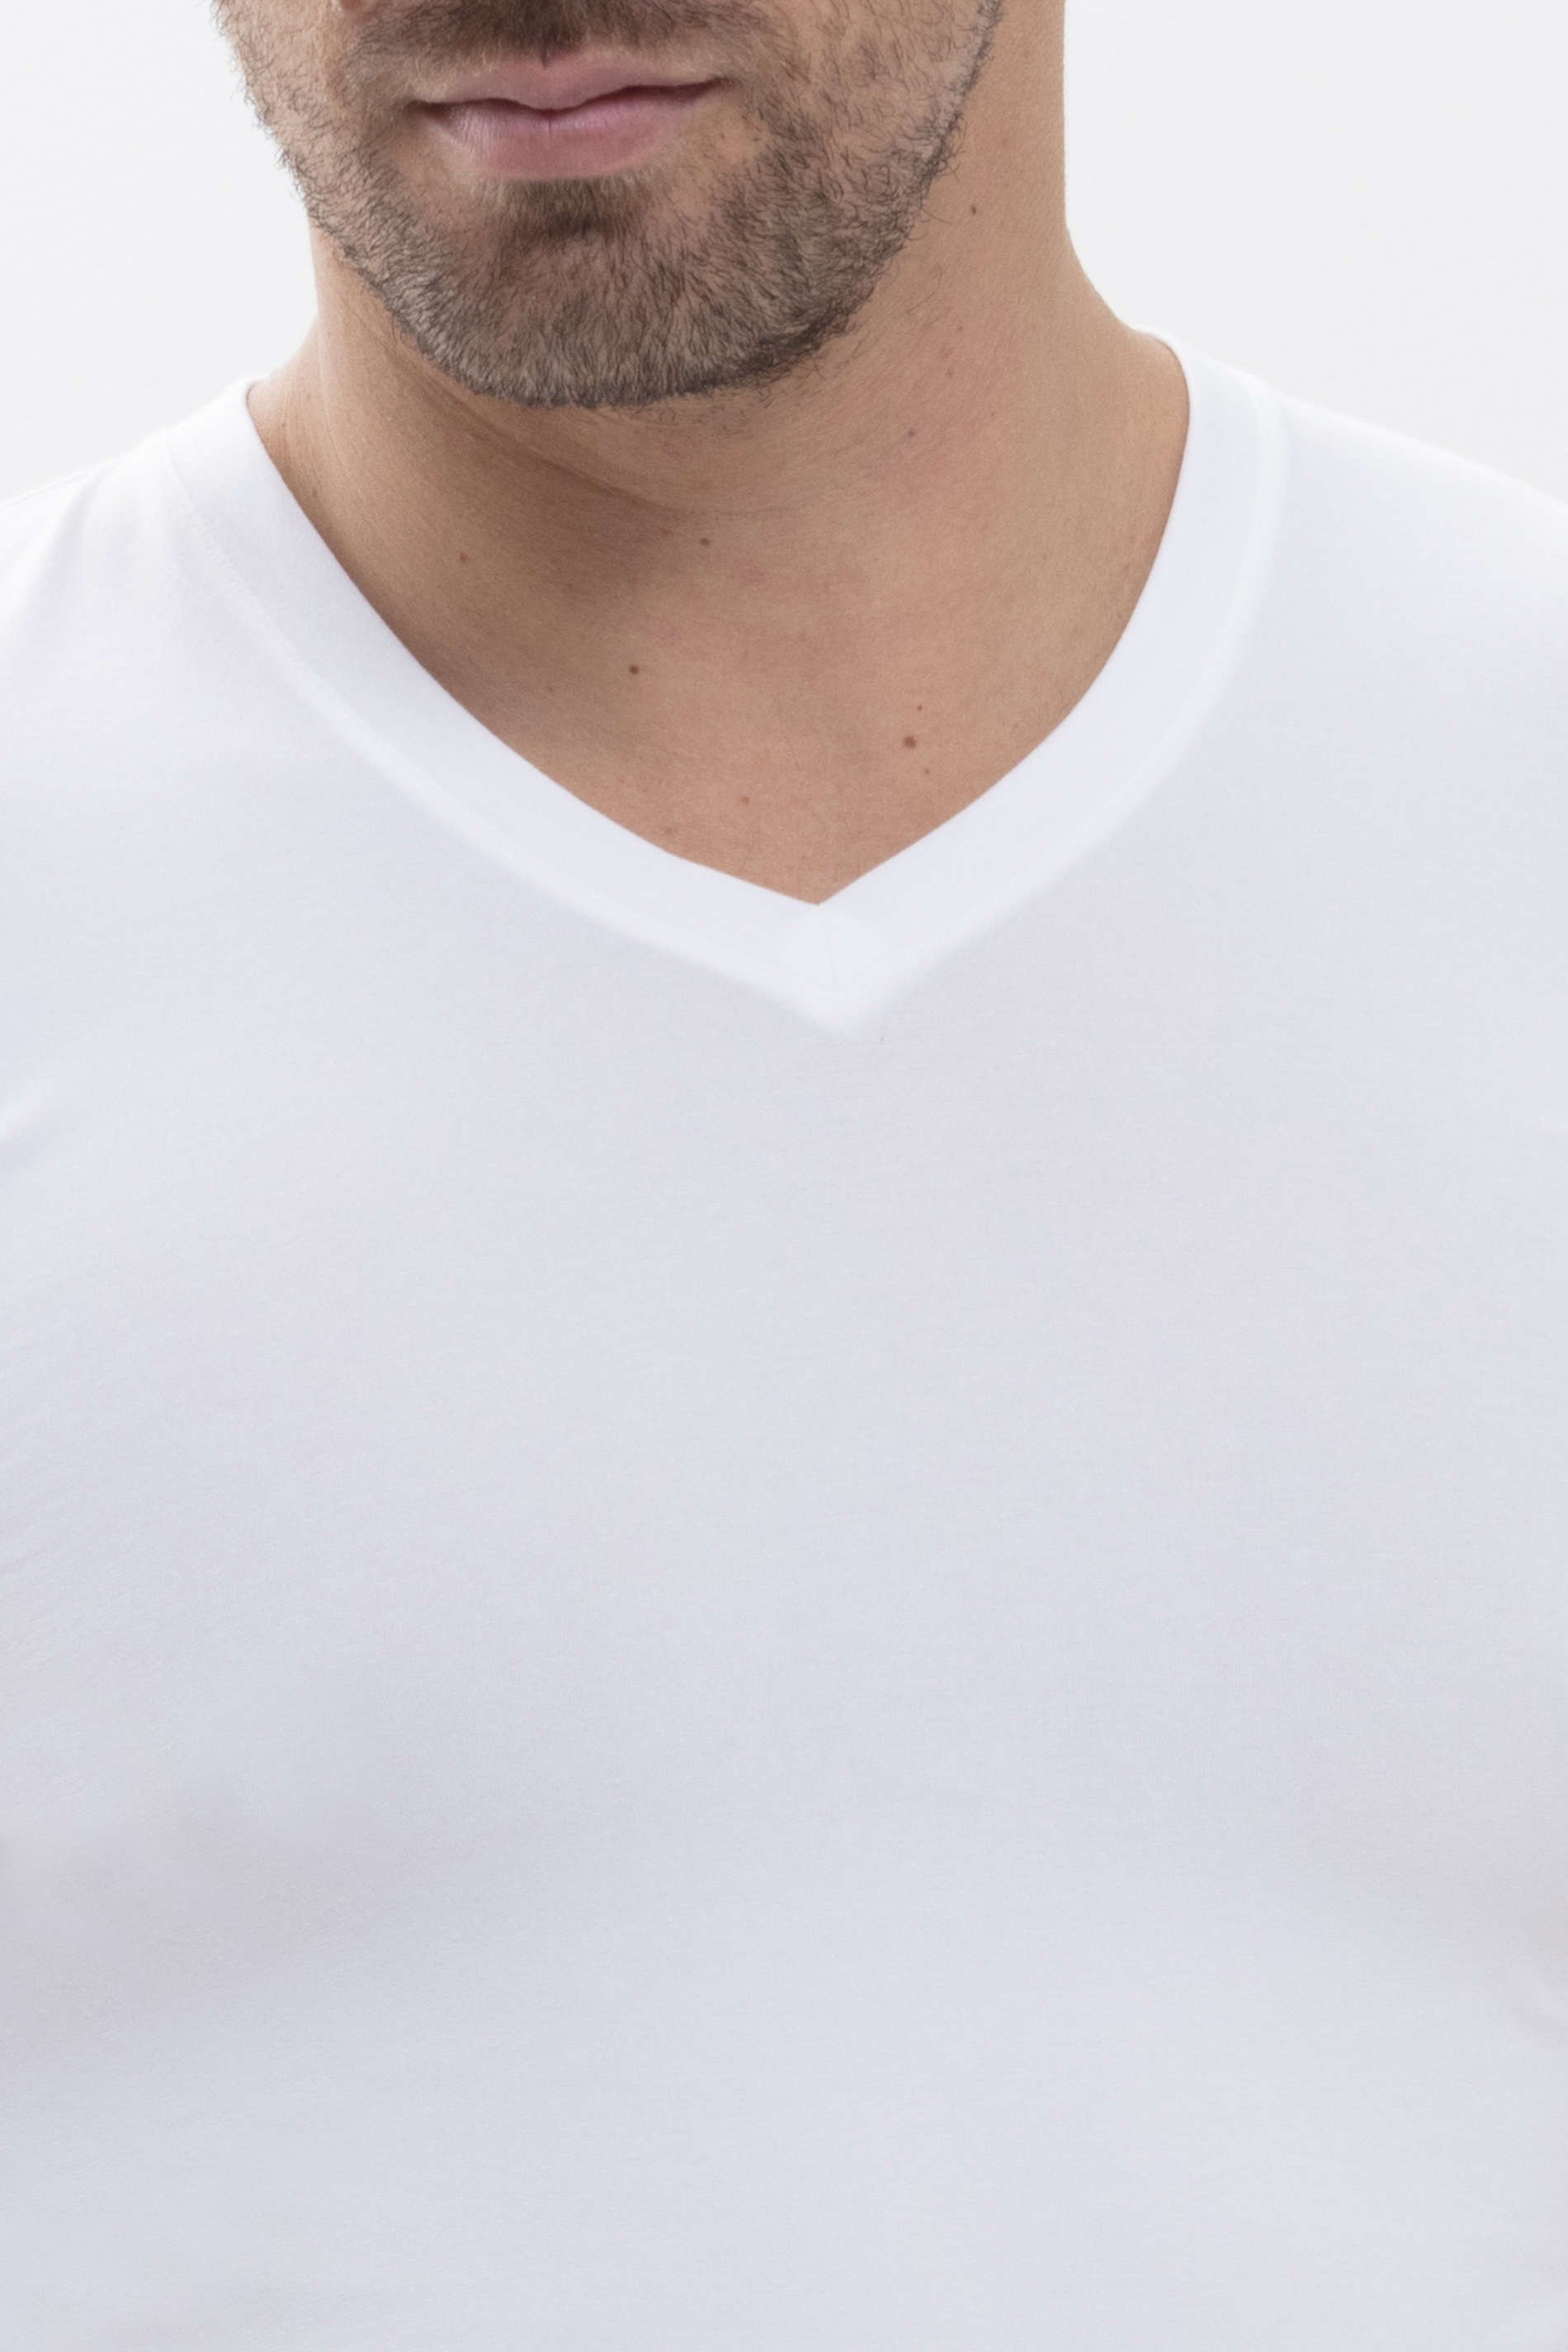 Hybrid T-Shirt Weiss Serie Hybrid T-Shirt Detailansicht 02 | mey®